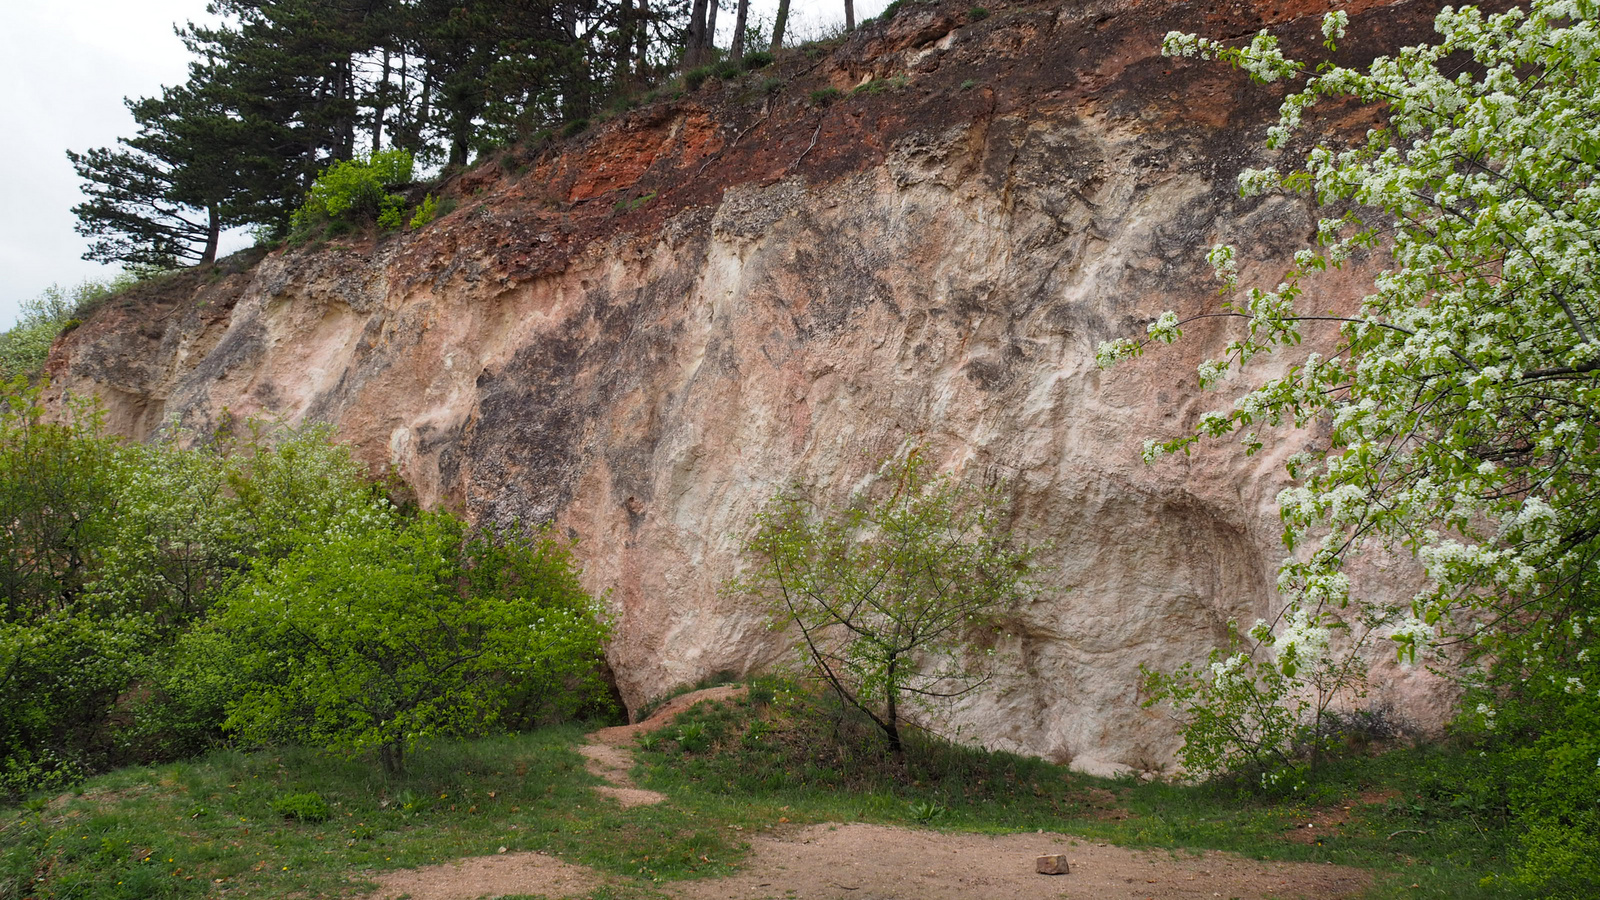 Pilisborosjenő, a Teve szikla és környéke, SzG3